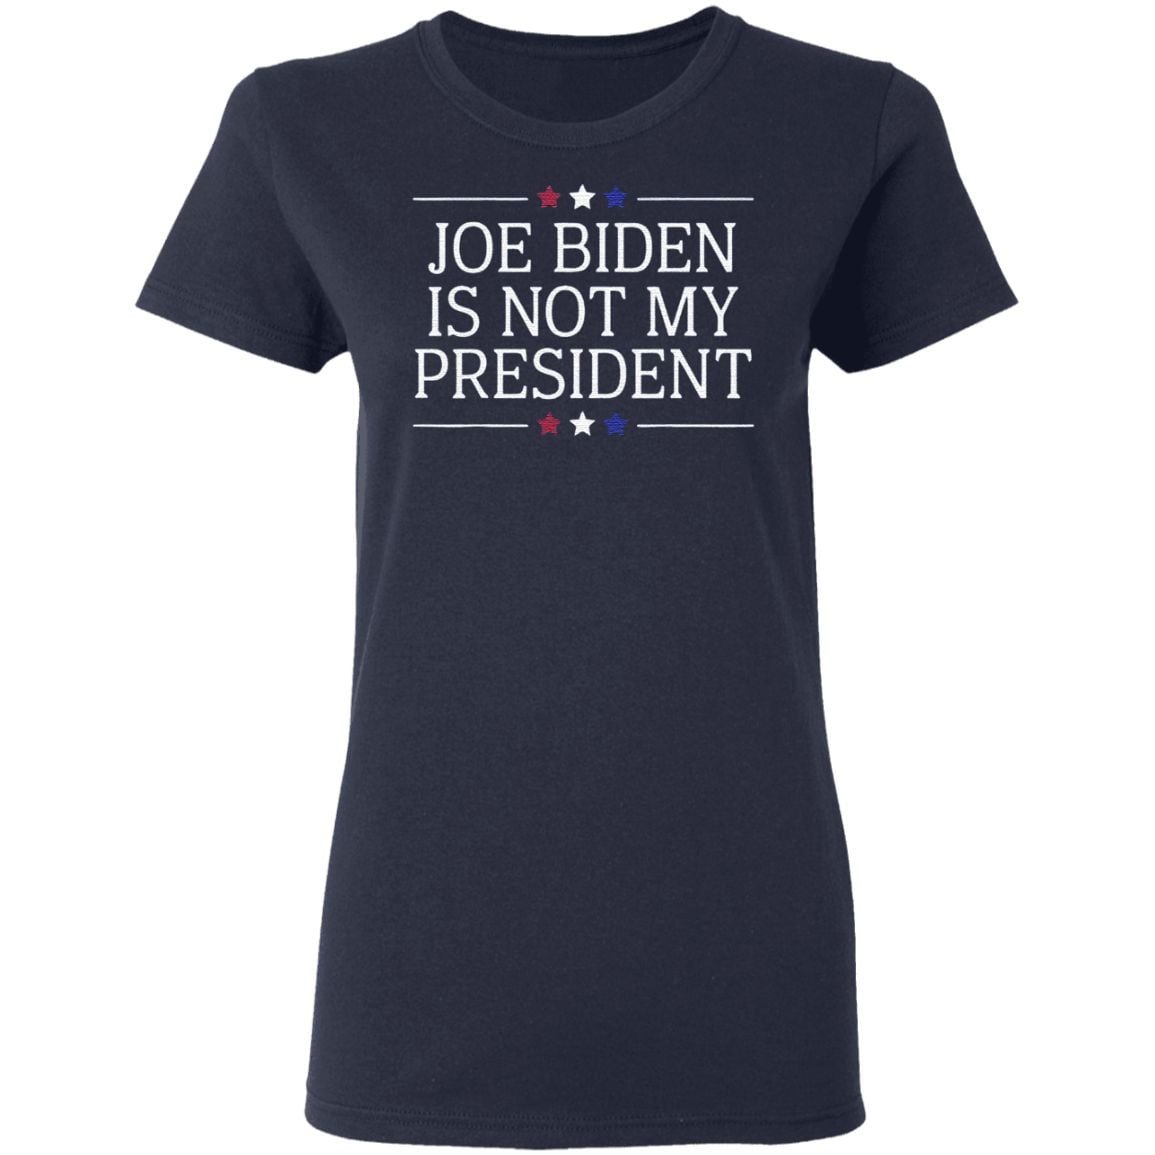 Joe Biden Is Not My President shirt